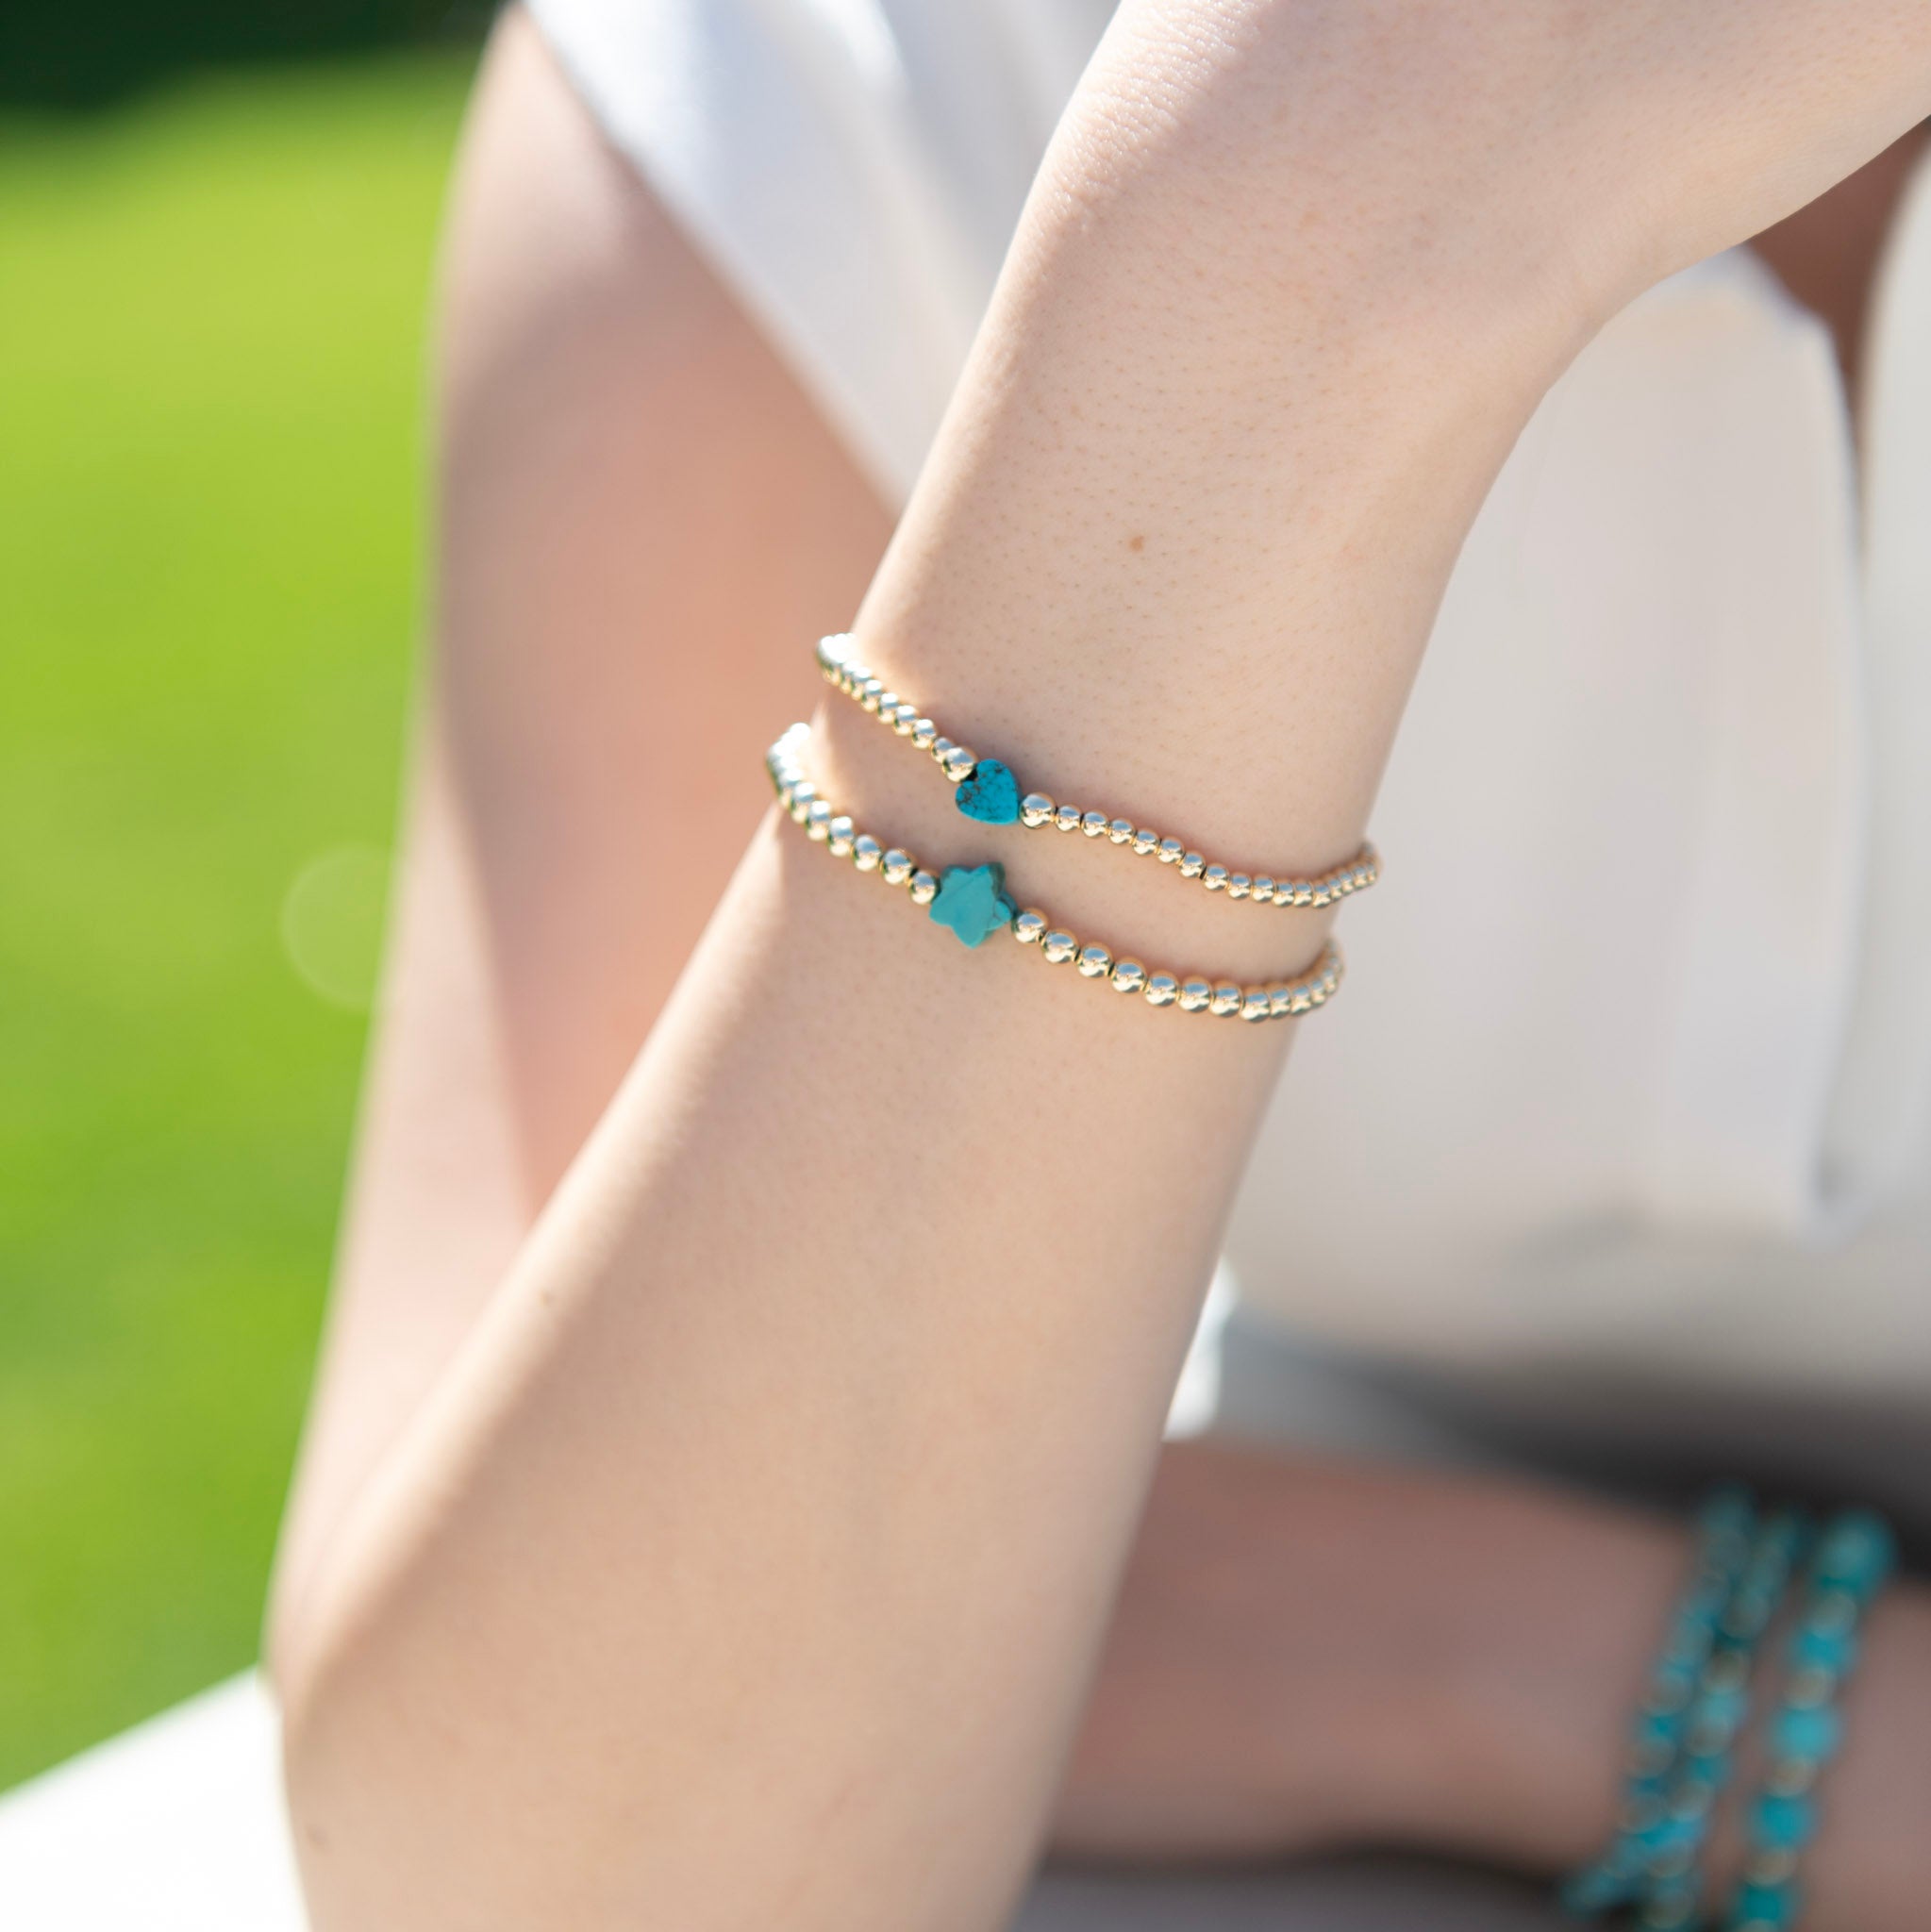 3mm Beaded Lux Turquoise Heart Bracelet - Jewel Ya